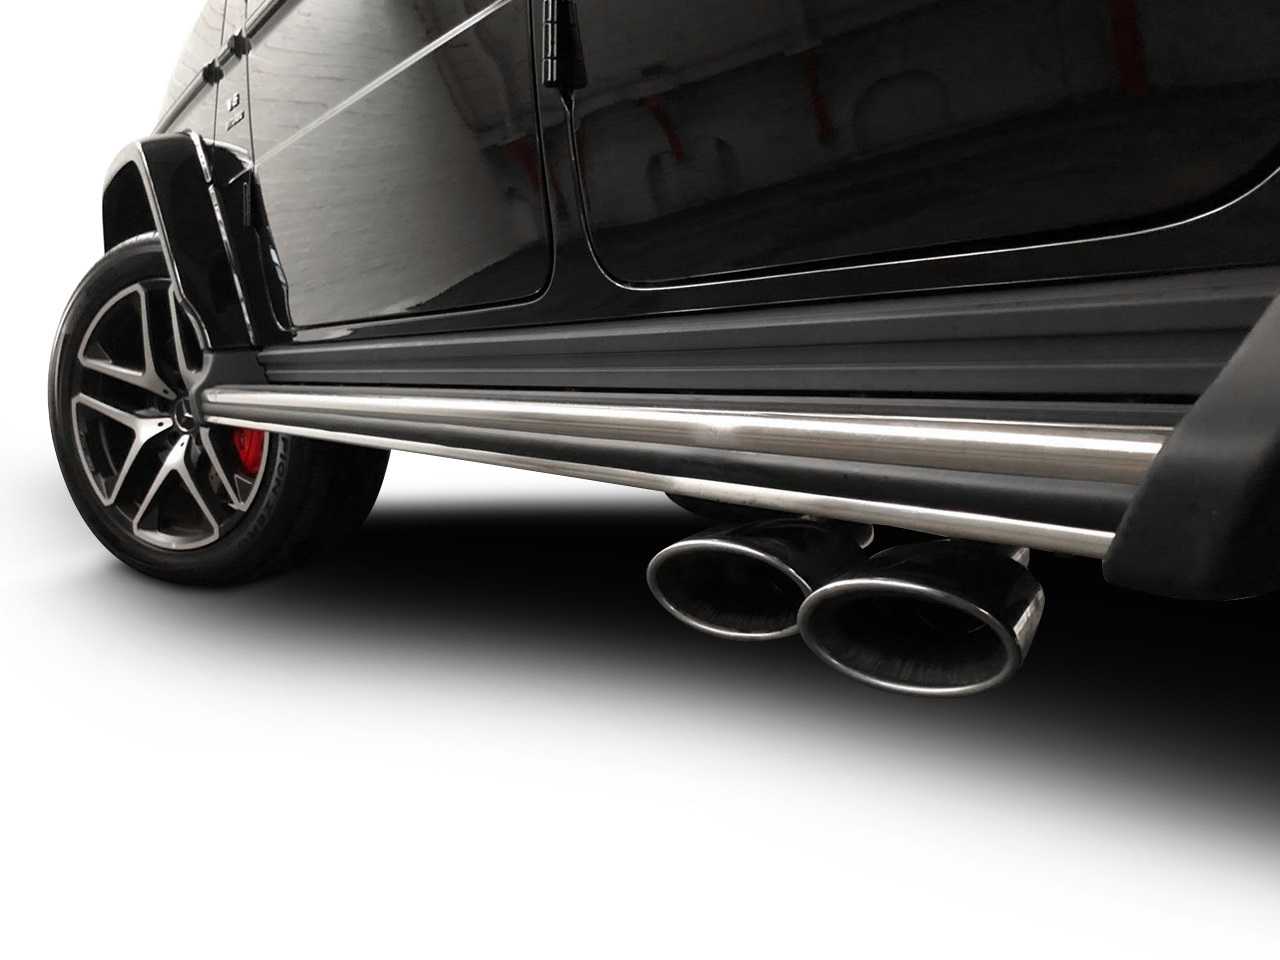 Mercedes Benz G-Wagon 63AMG cylincer